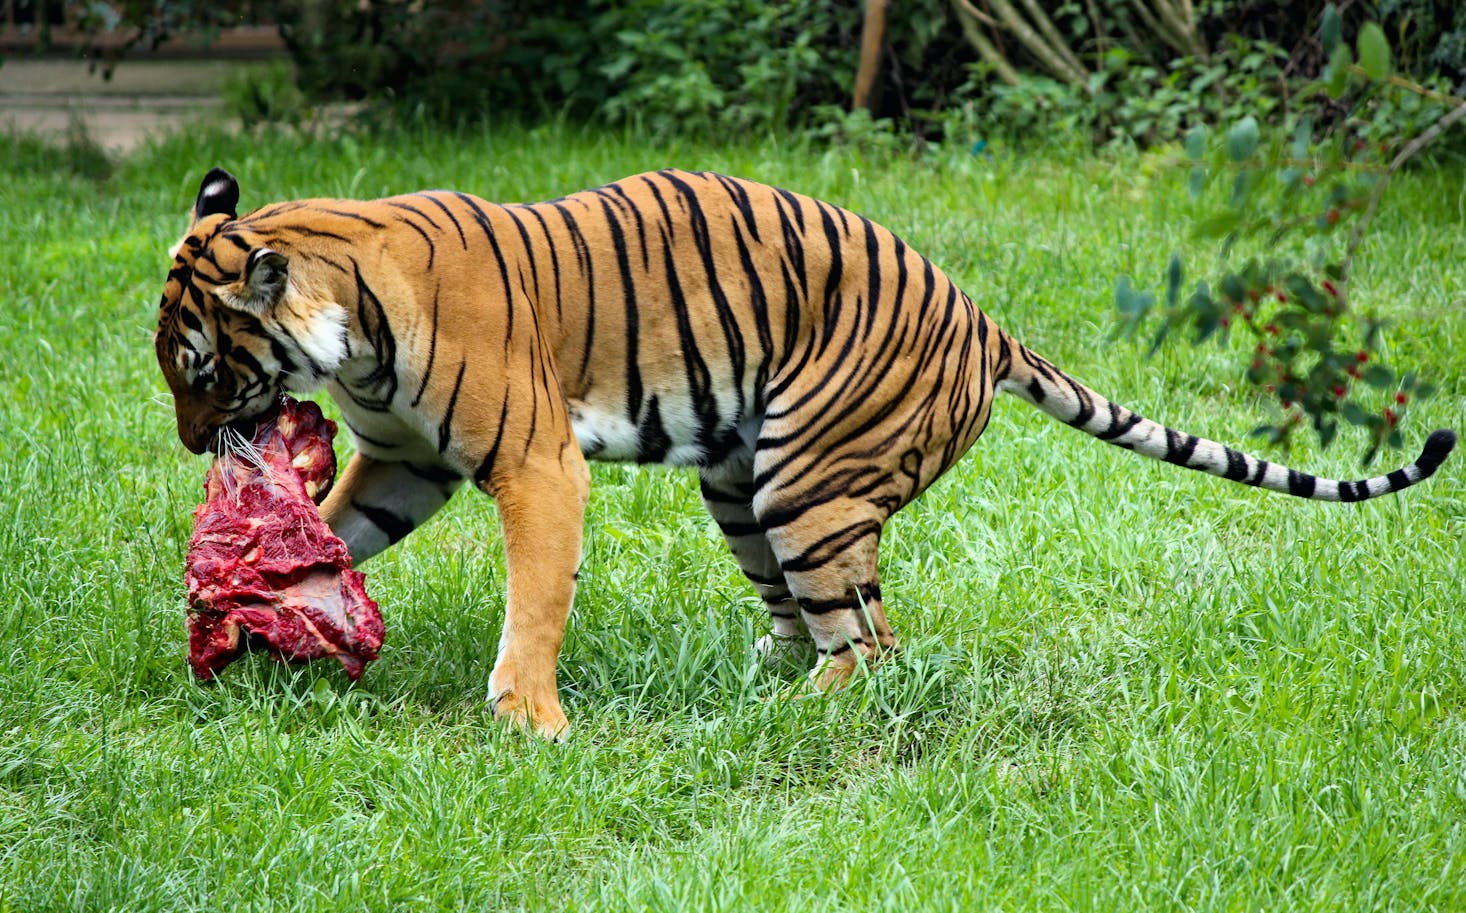 Tiger in Prague zoo